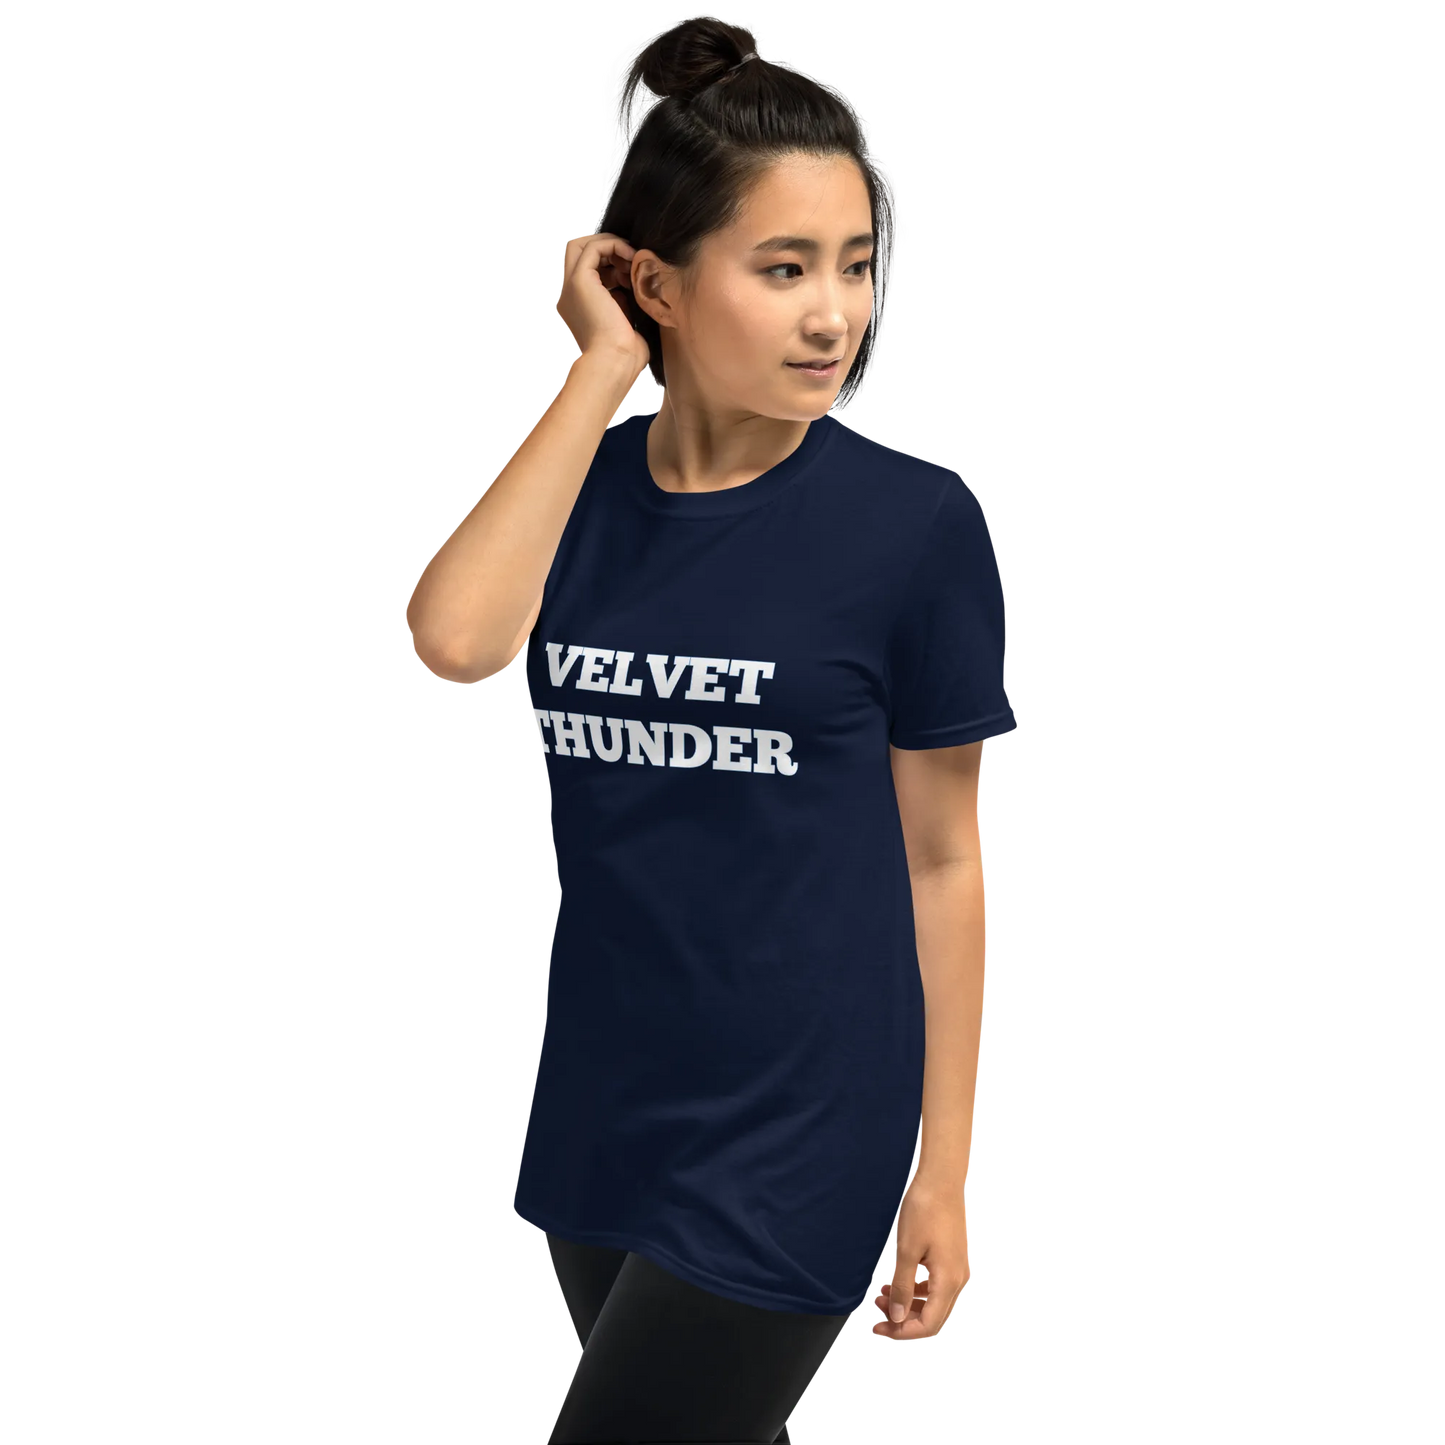 Velvet Thunder Tee in Navy on woman left